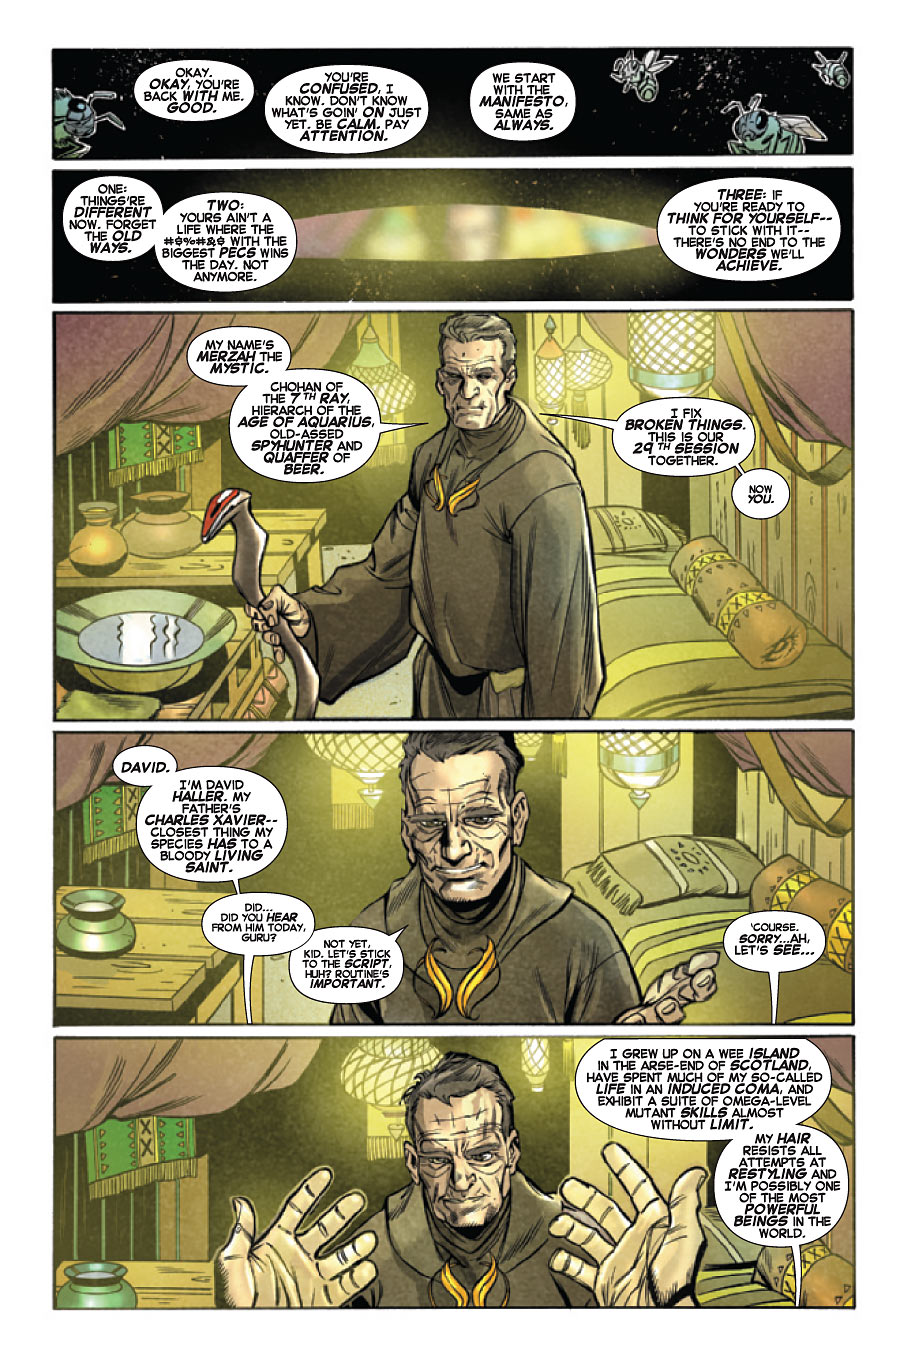 x-men legacy #1 page 3